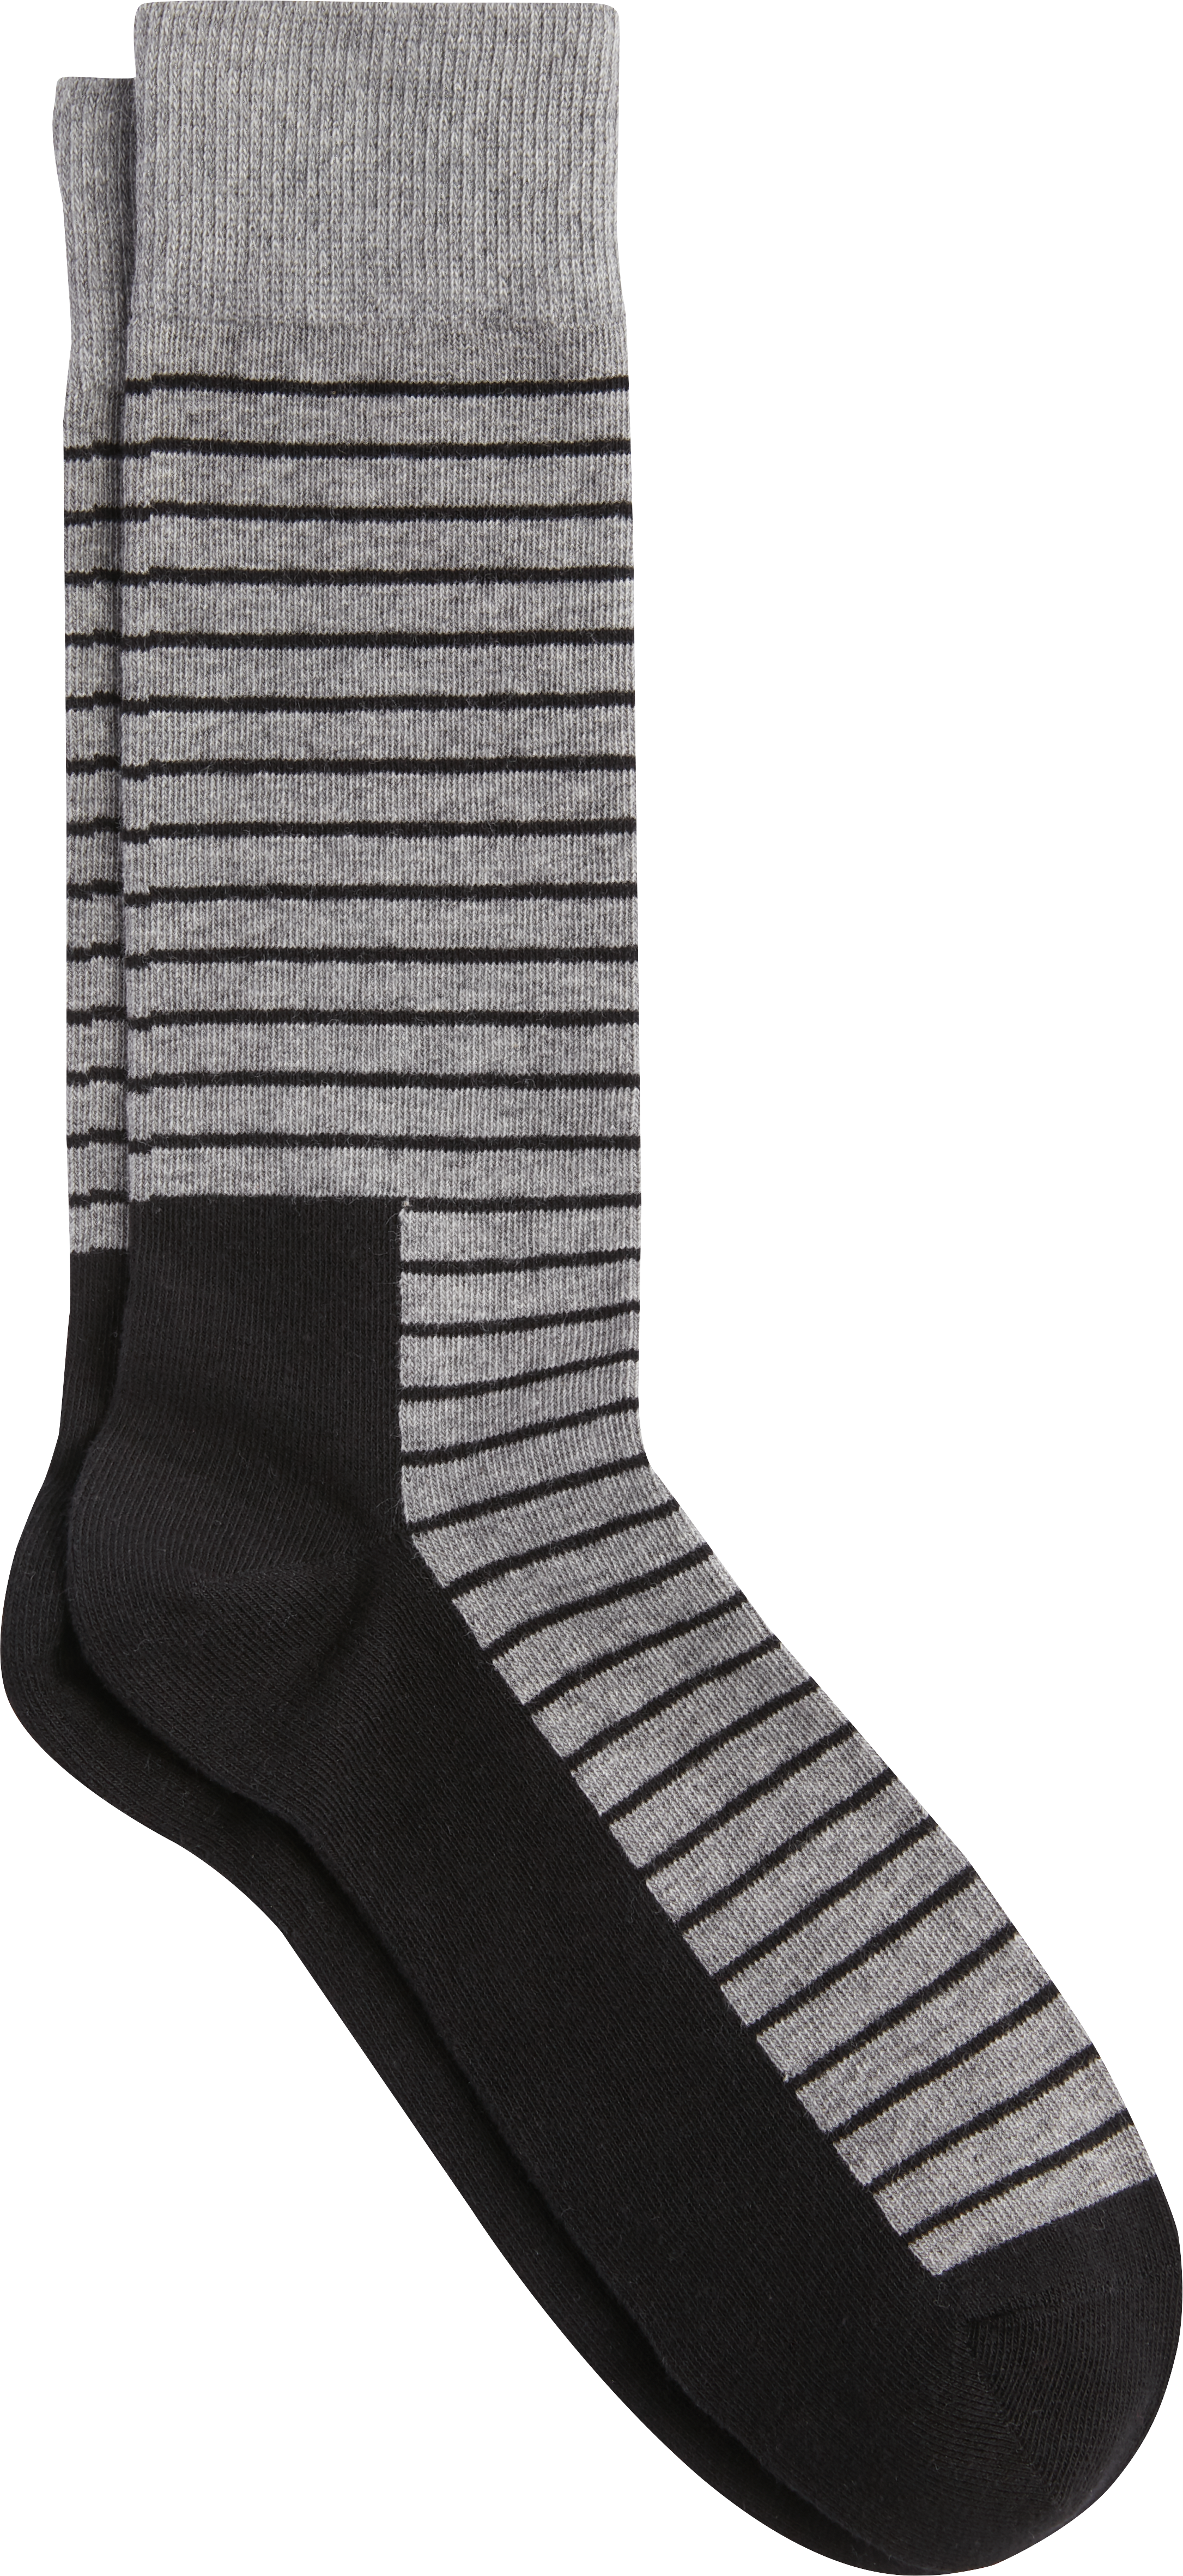 Men's Socks - Dress Socks & Packs | Men's Wearhouse